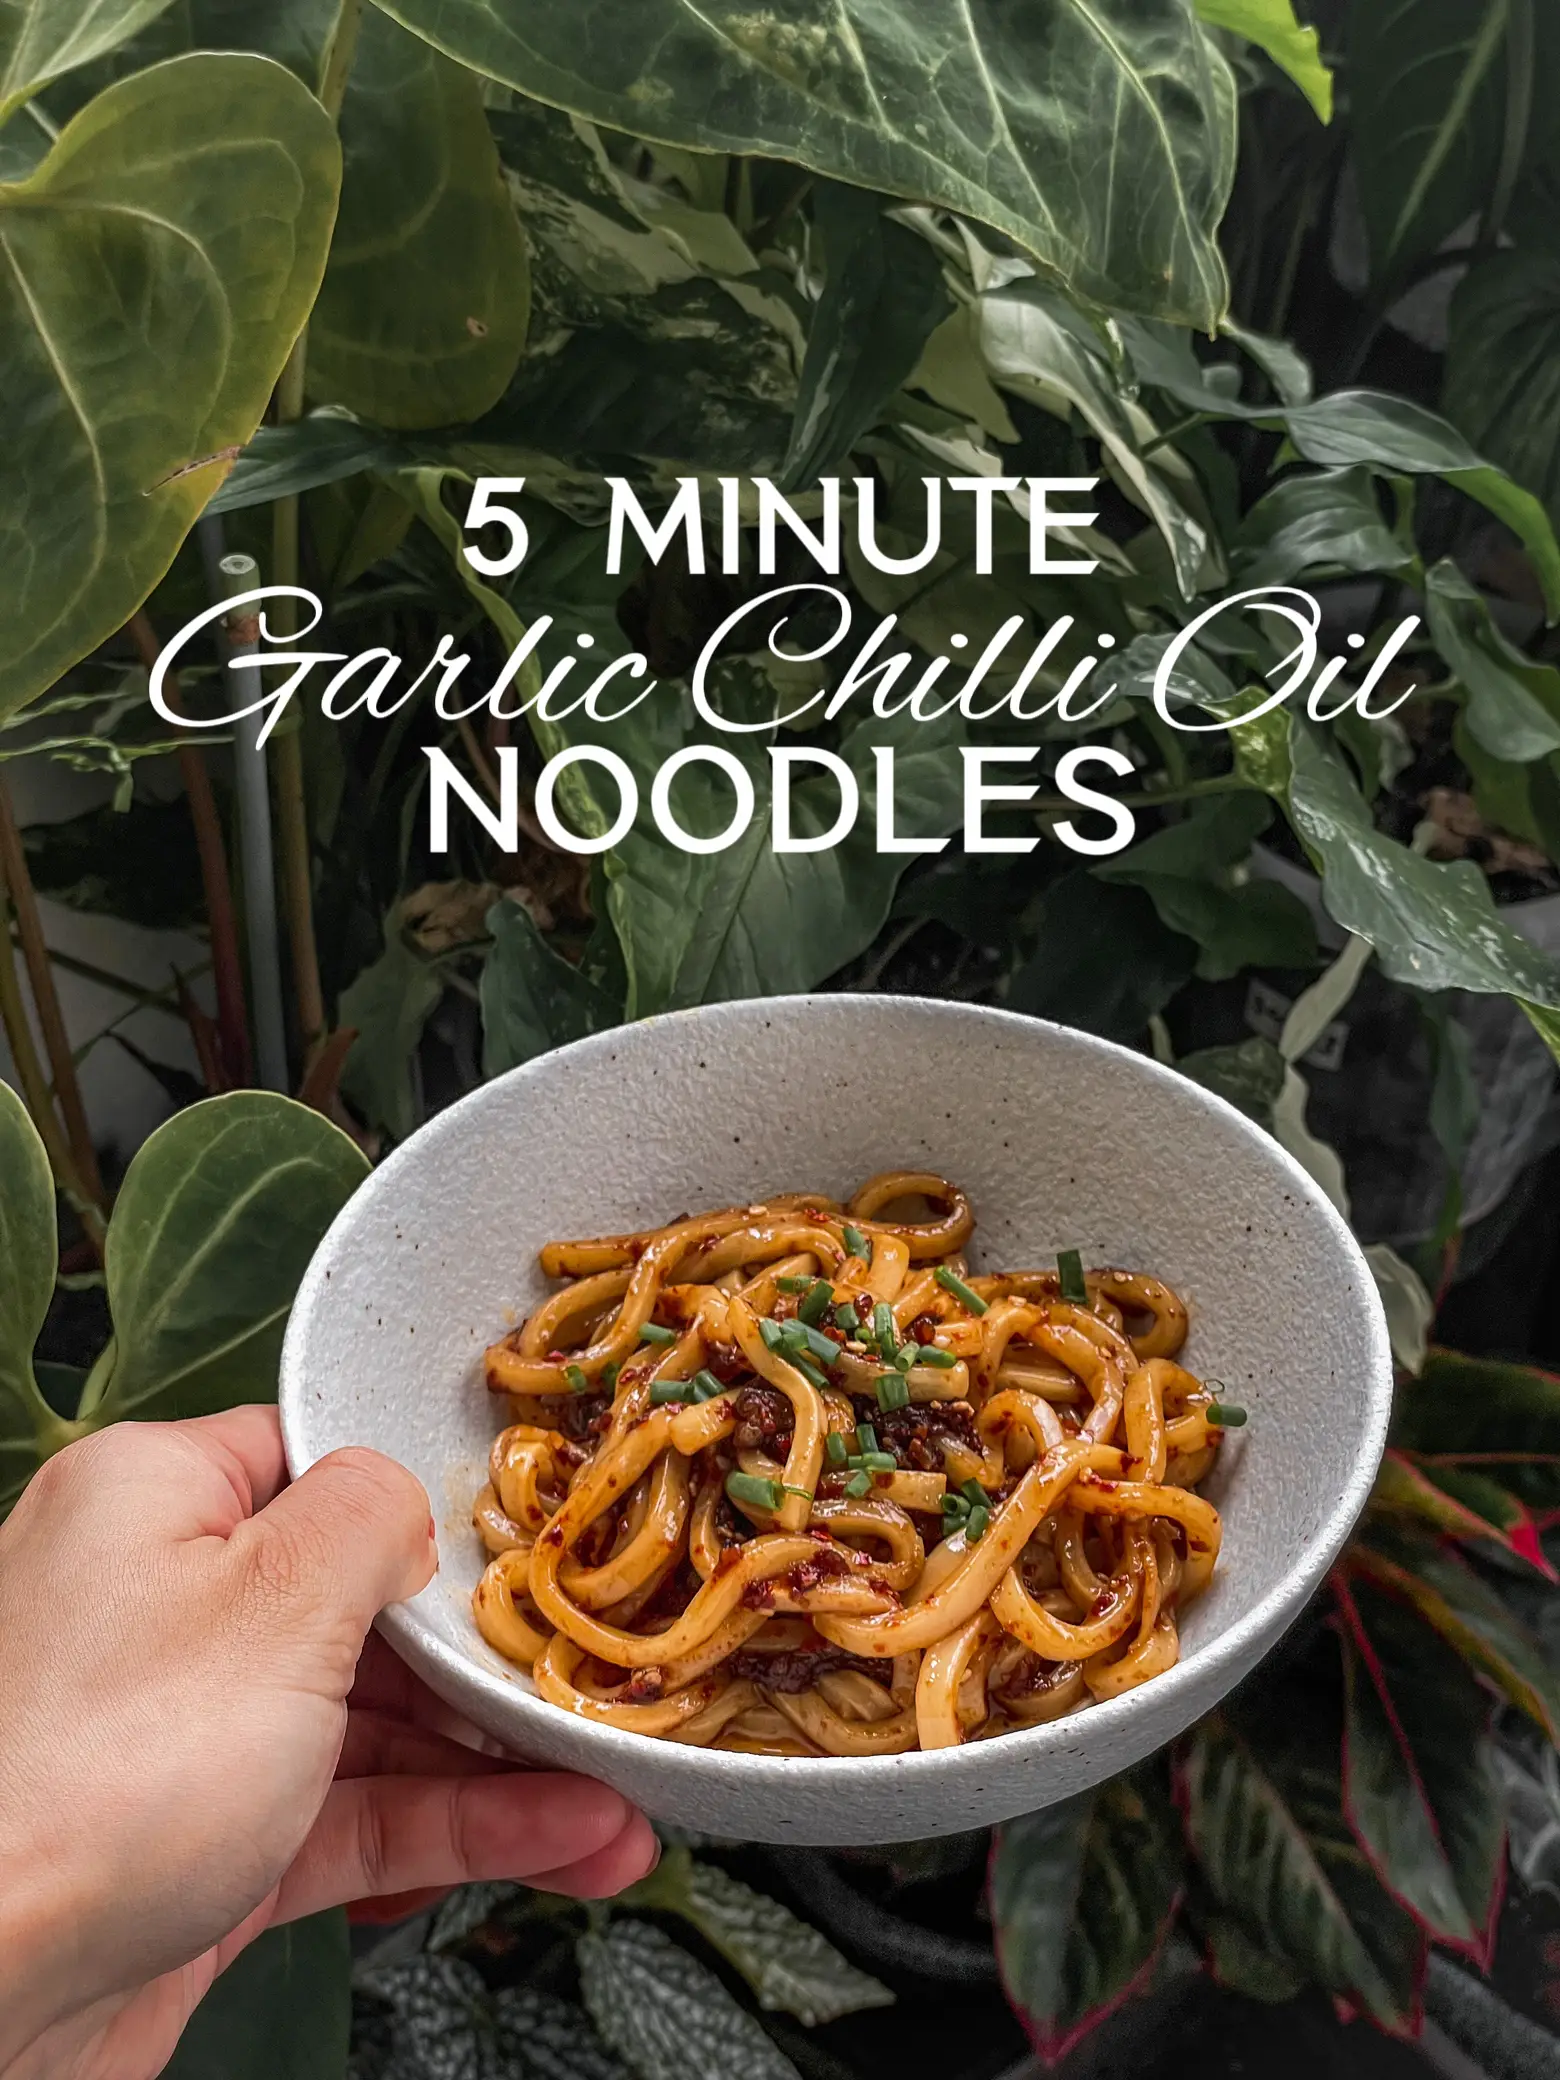 Chilli Oil Noodles Recipe (Garlic Chilli Oil Noodles Recipe)